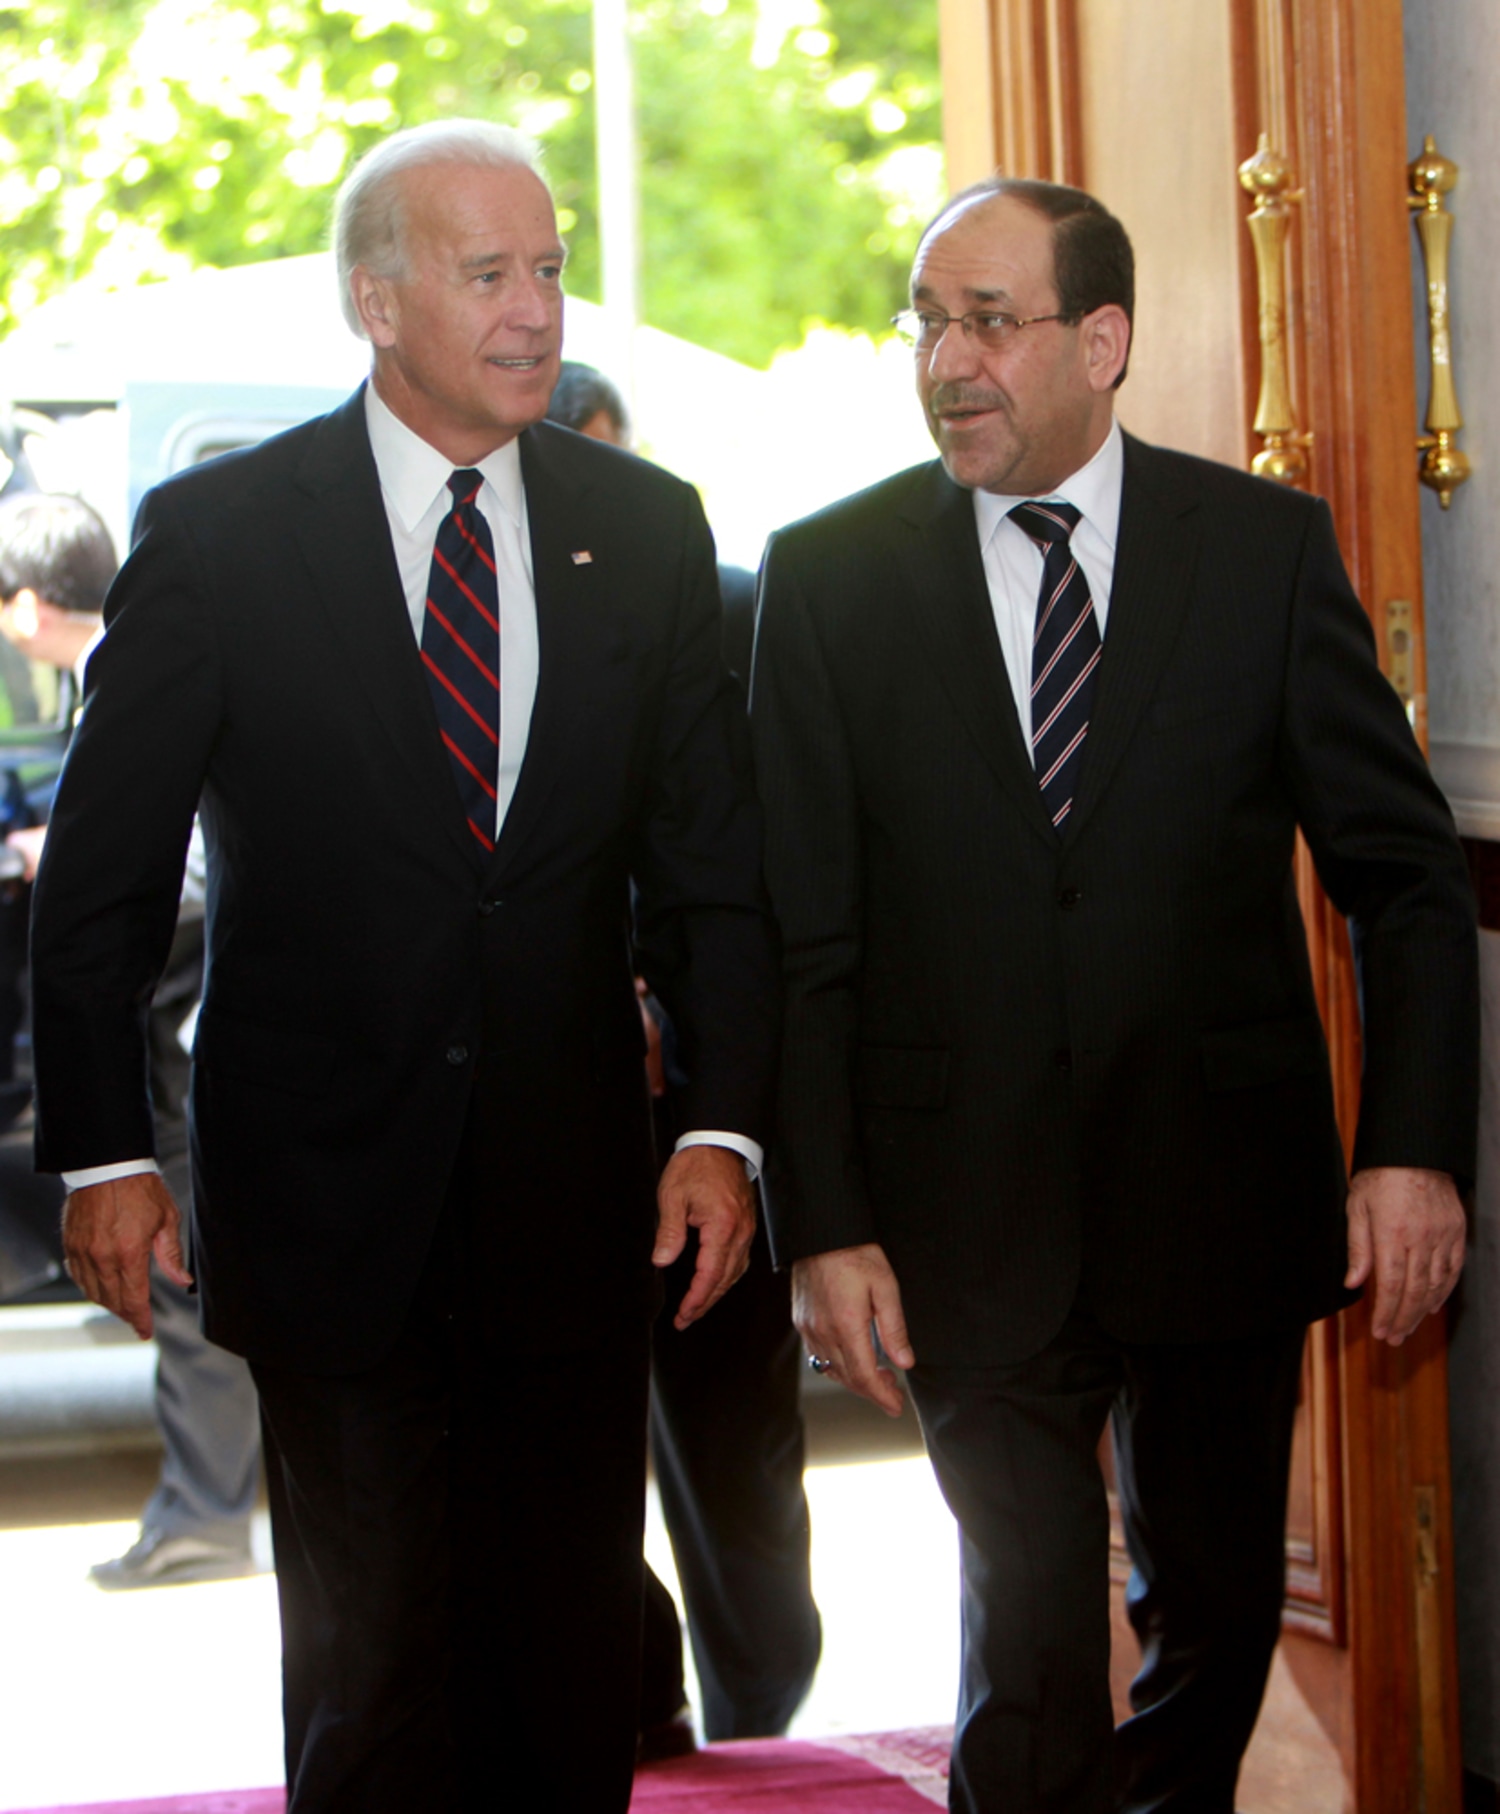 Six years after Saddam Hussein, Nouri al-Maliki tightens his grip on Iraq, Iraq